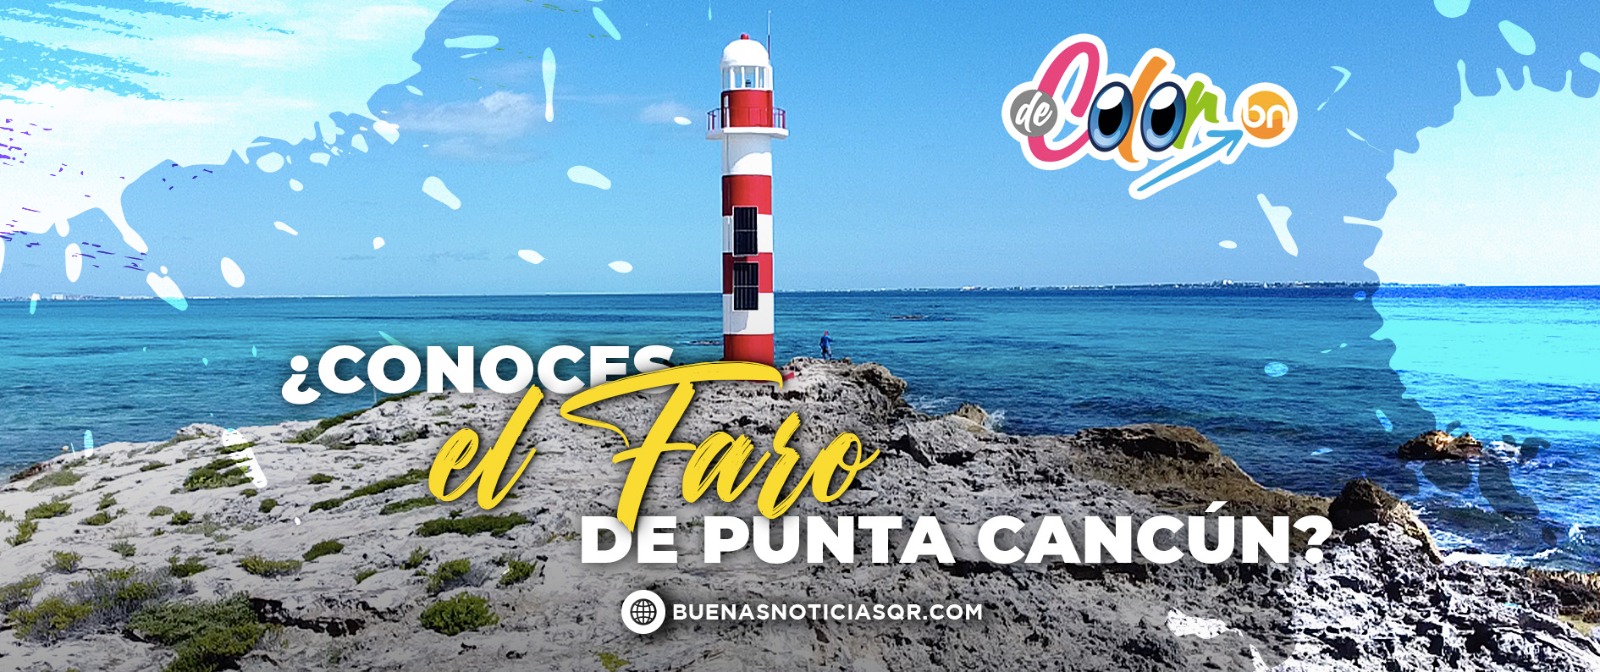 Faro de Punta Cancún, un tesoro escondido en el Caribe (VIDEO)